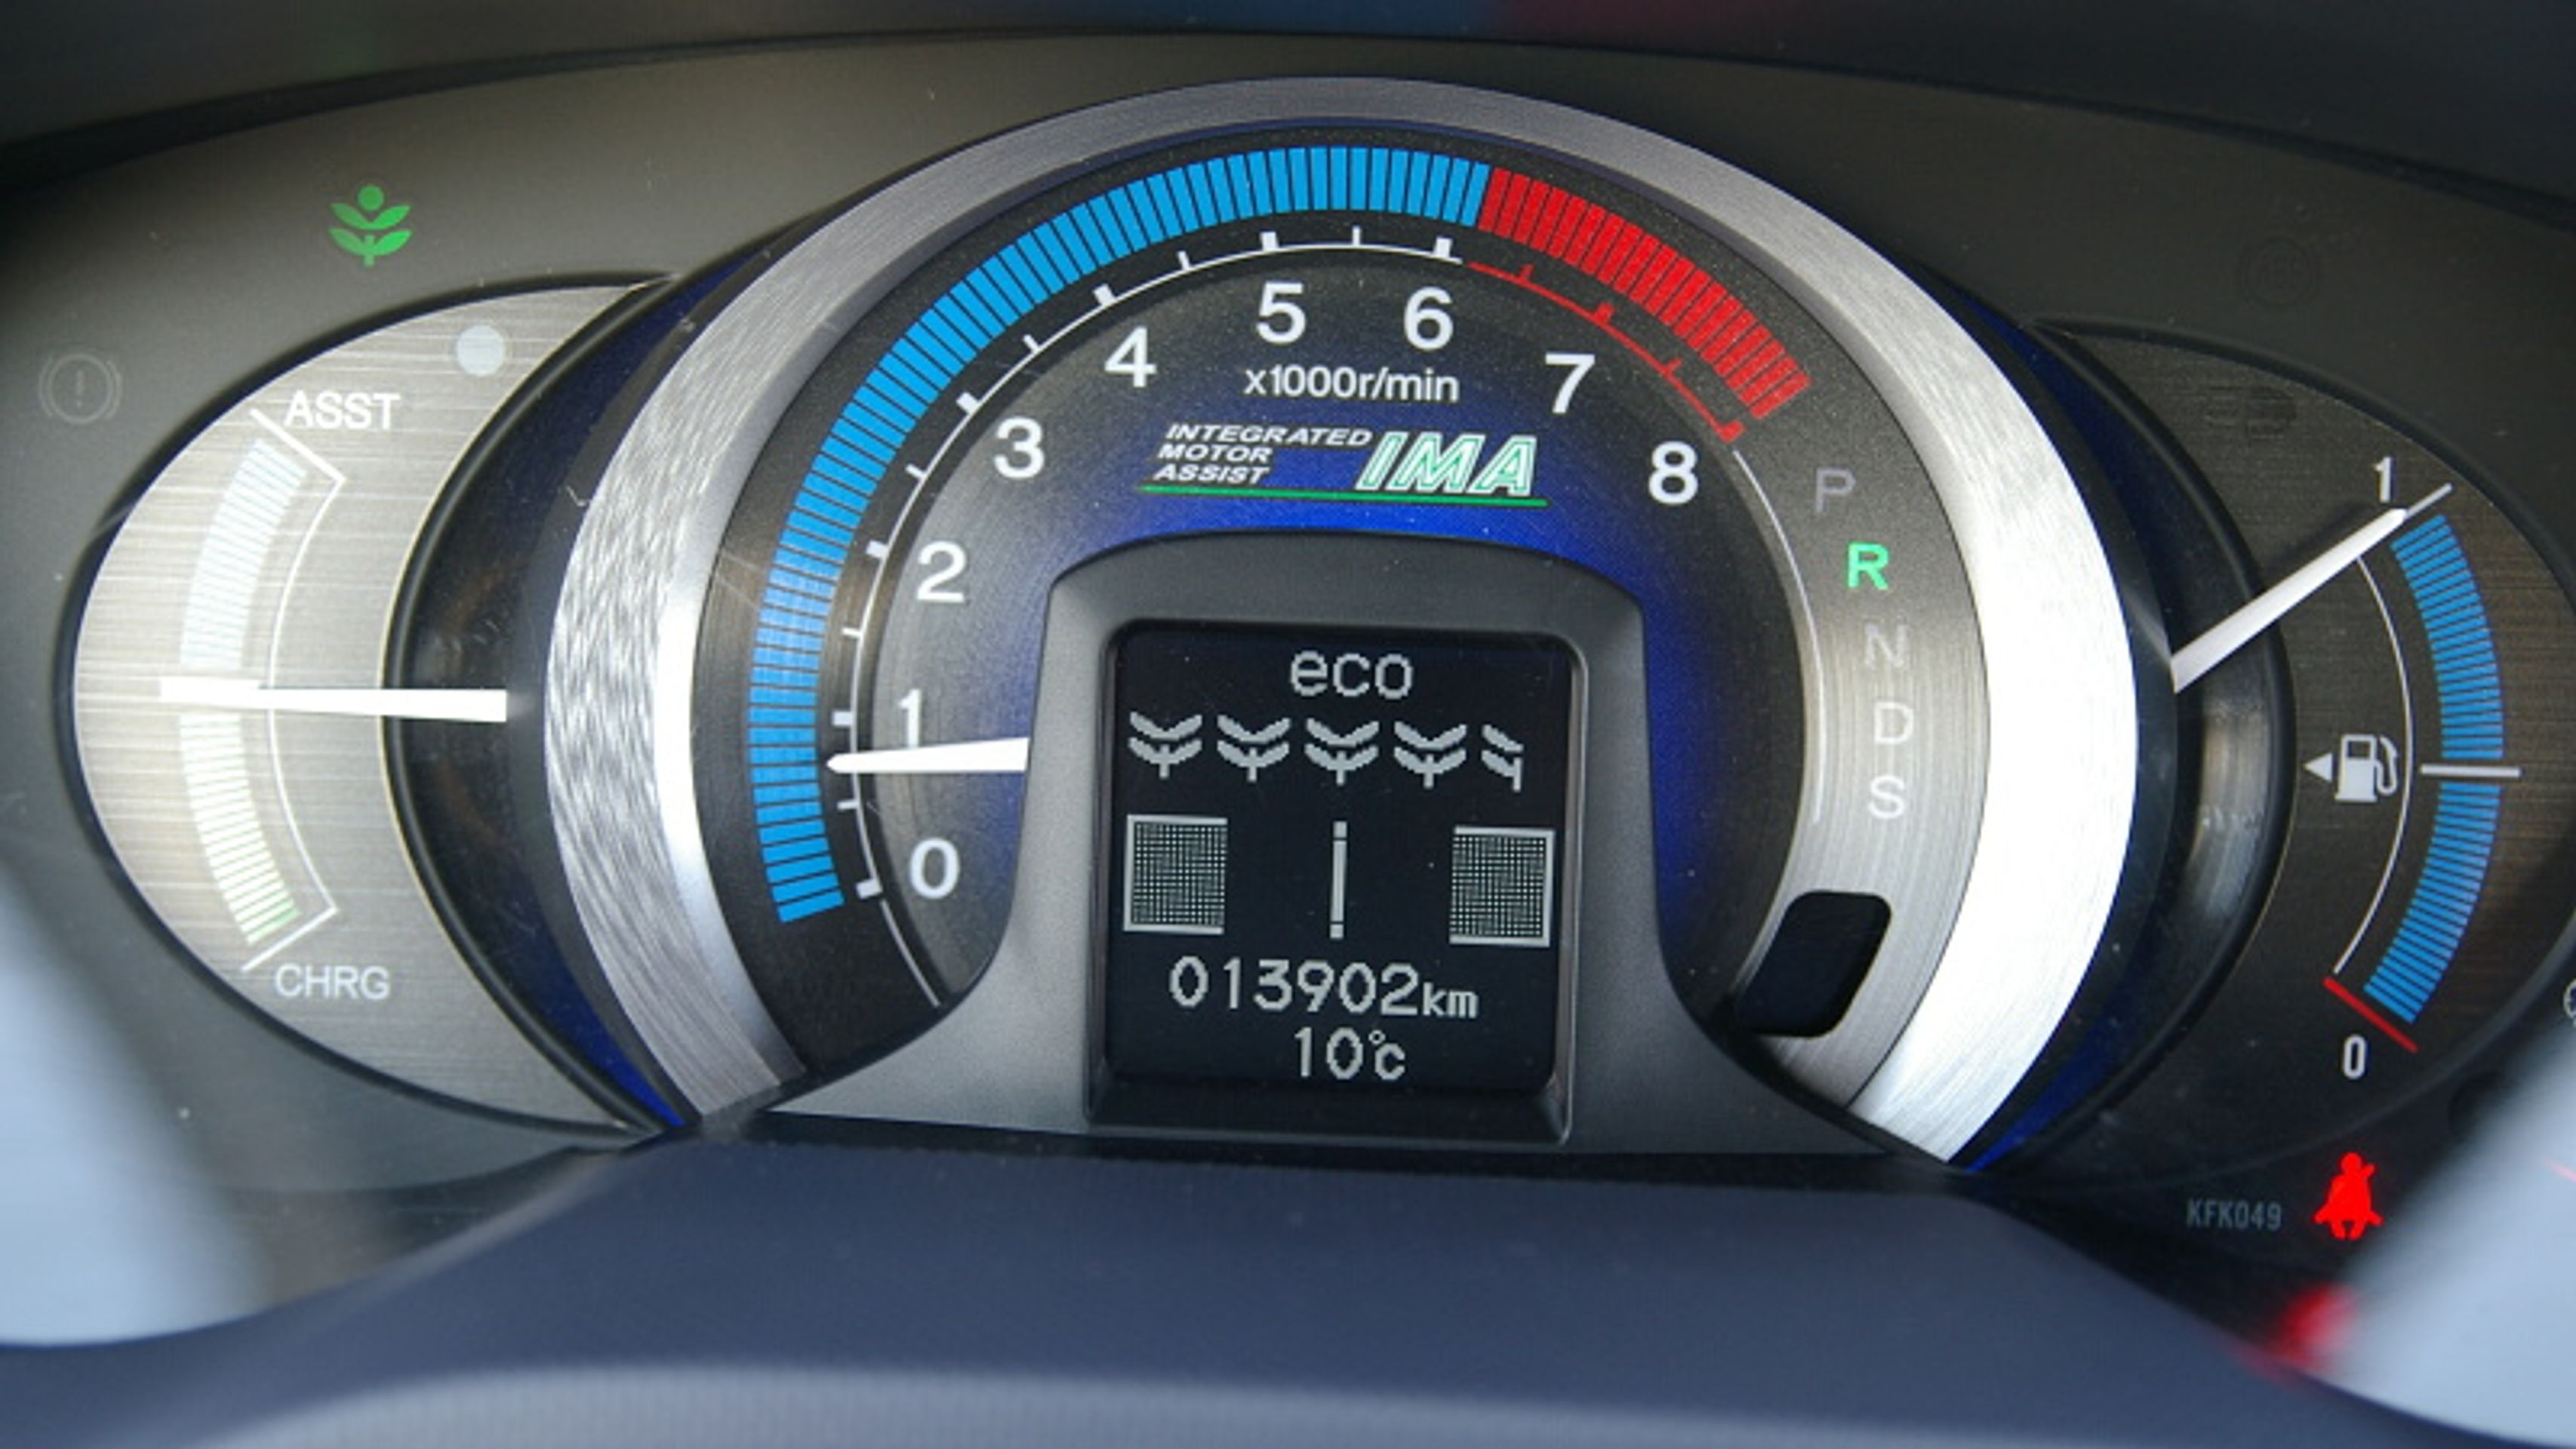 Honda Insight-7 - GALERIE Honda Insight (7/8)